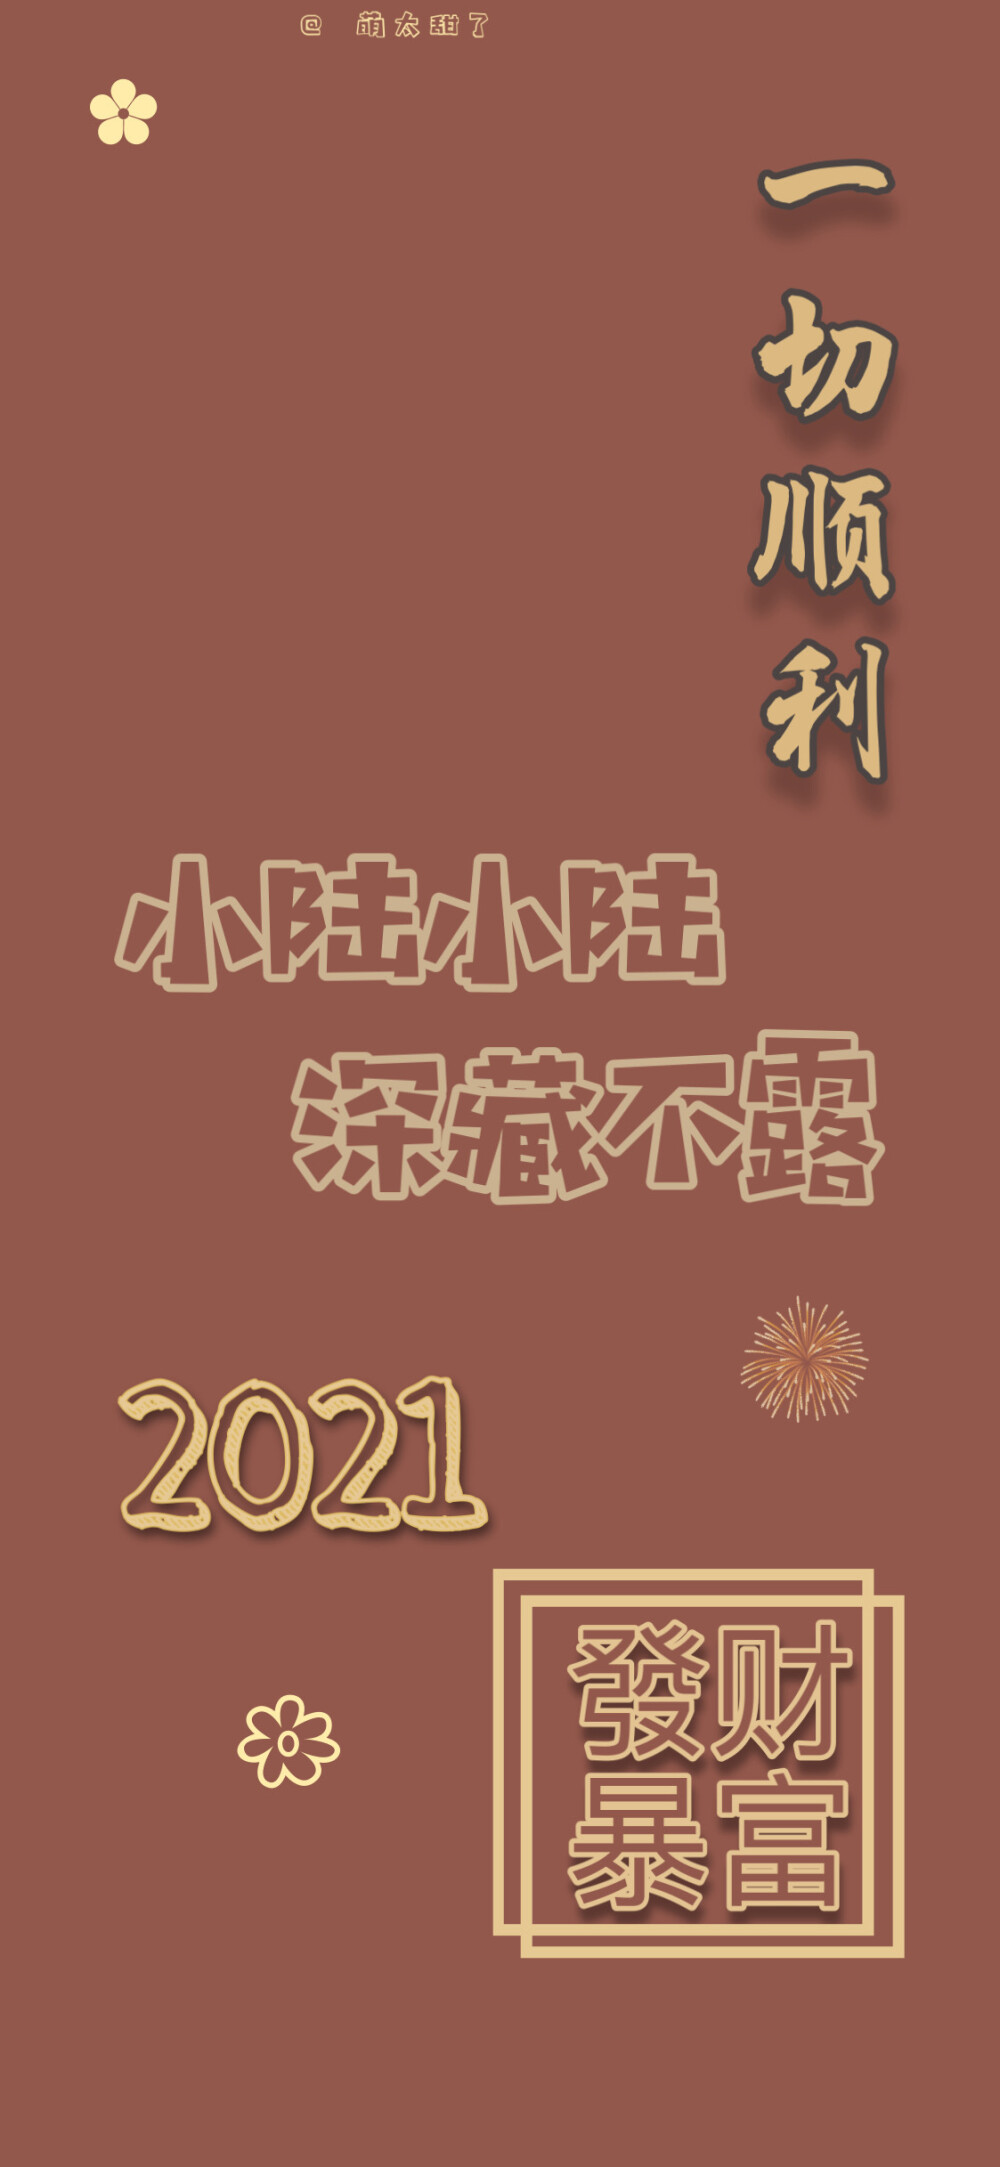 2021年姓氏壁纸第二期【小张|小黄|小林|小古|小耿|小丁|小袁|小胡|小